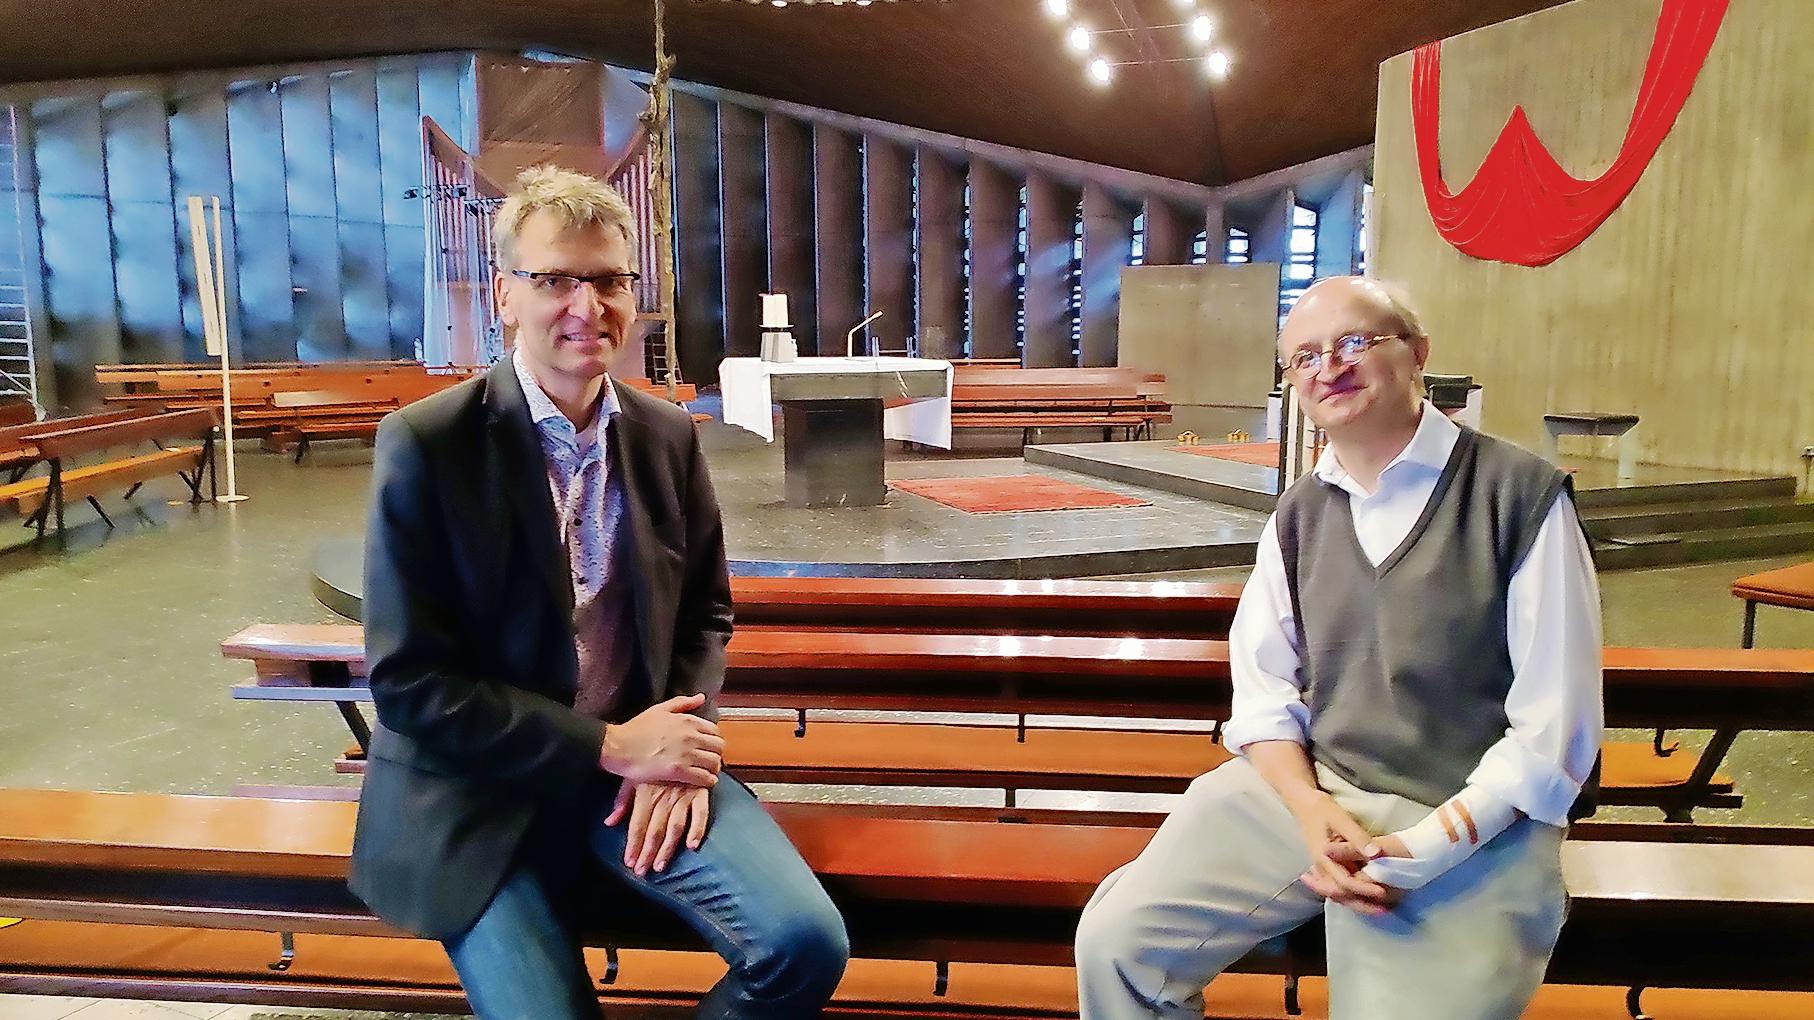 Zukünftig teilen sie sich eine ökumenische Kirche – Christoph Tebbe (l.) und Christoph Zettner. (c) Ann-Katrin Roscheck